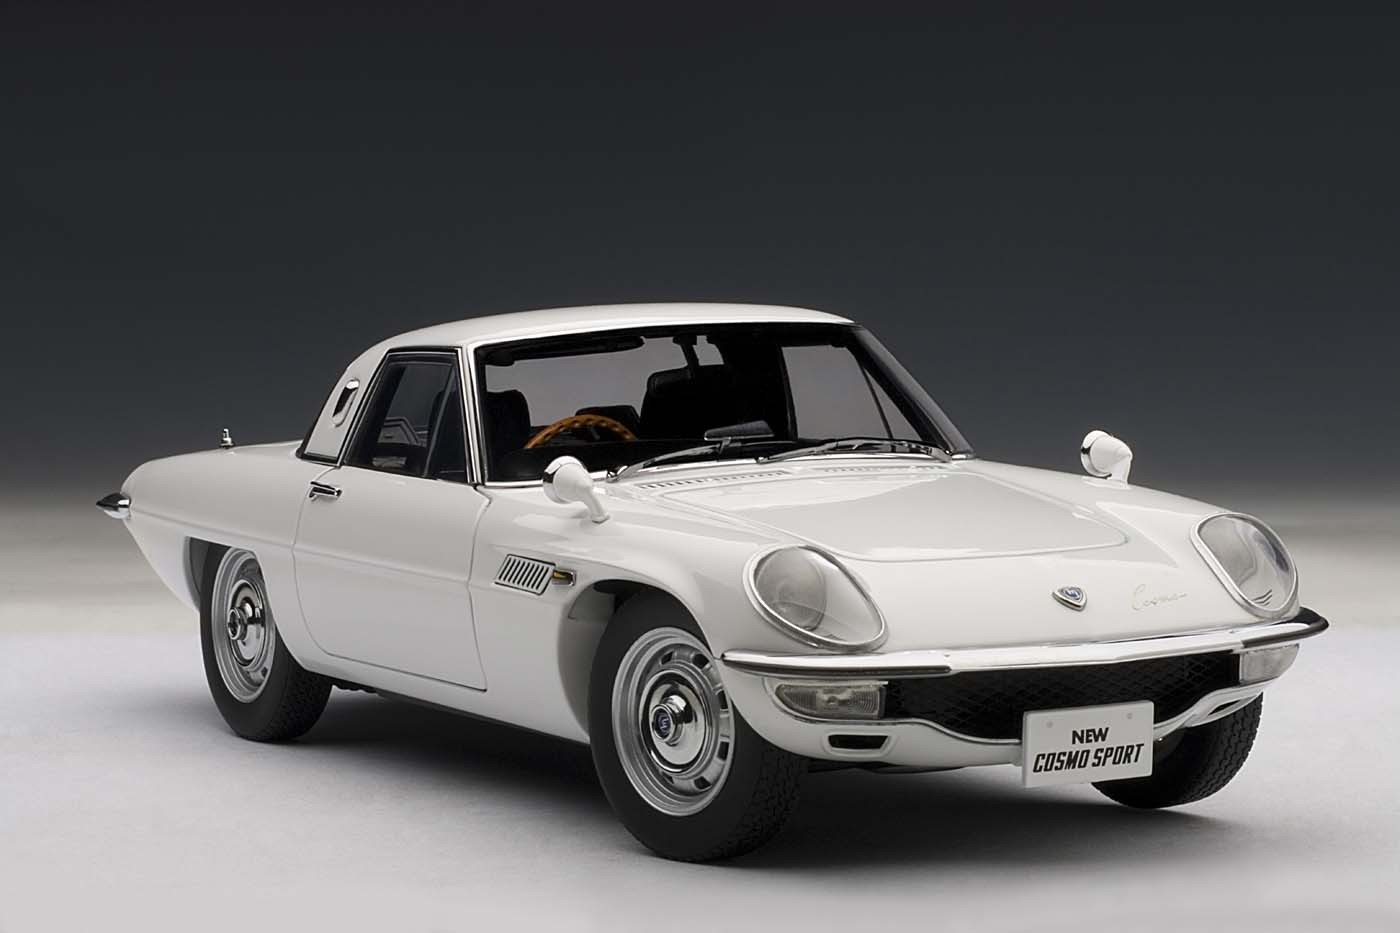 Mazda Cosmo Sport, White AUTOart 75931 die-cast scale model 1:18